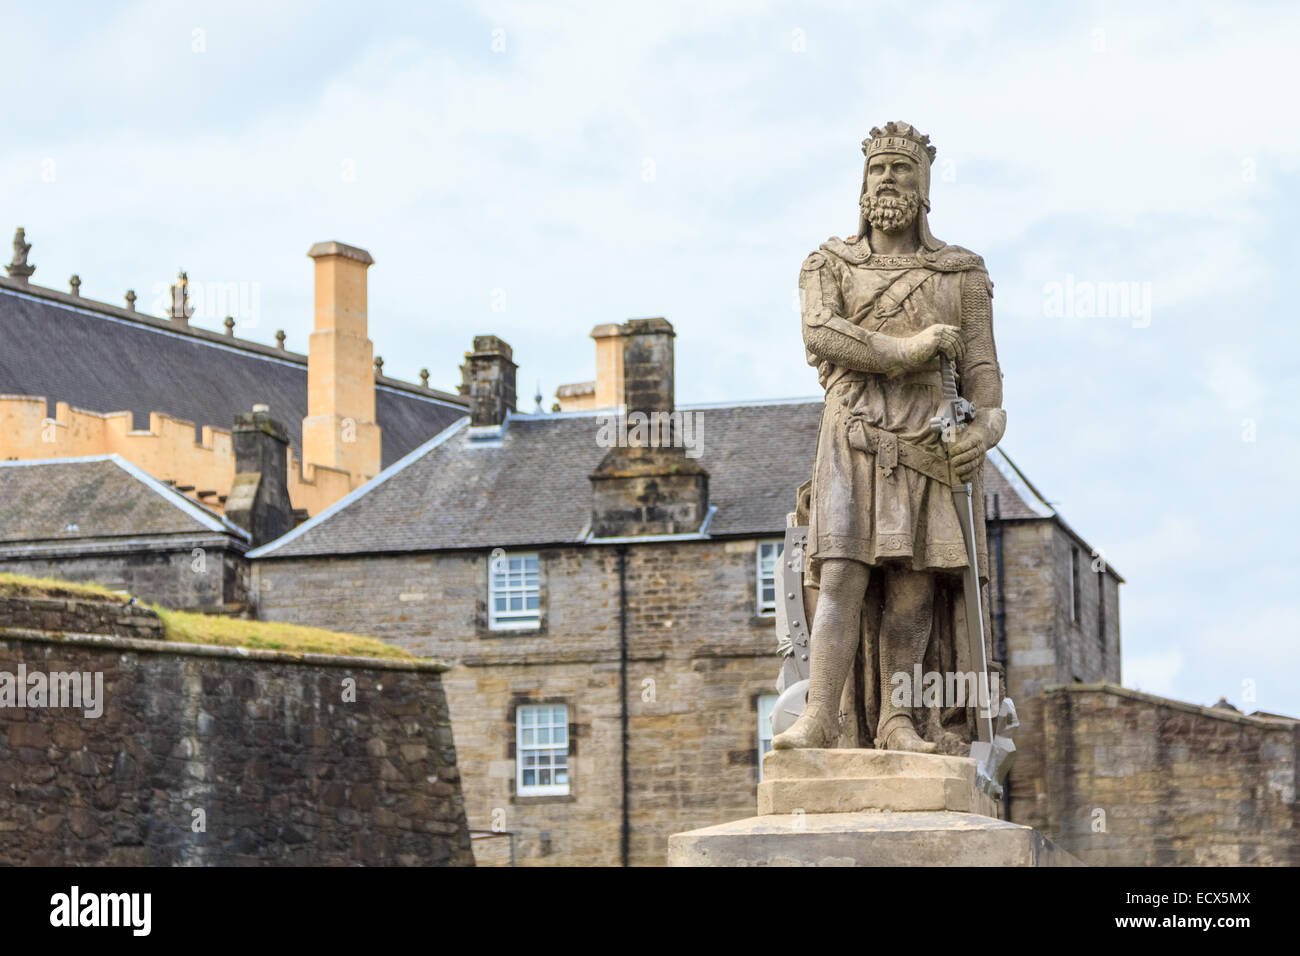 Robert the Bruce, roi d'Écosse ; statue de pierre en face du château de Stirling. L'Ecosse Banque D'Images